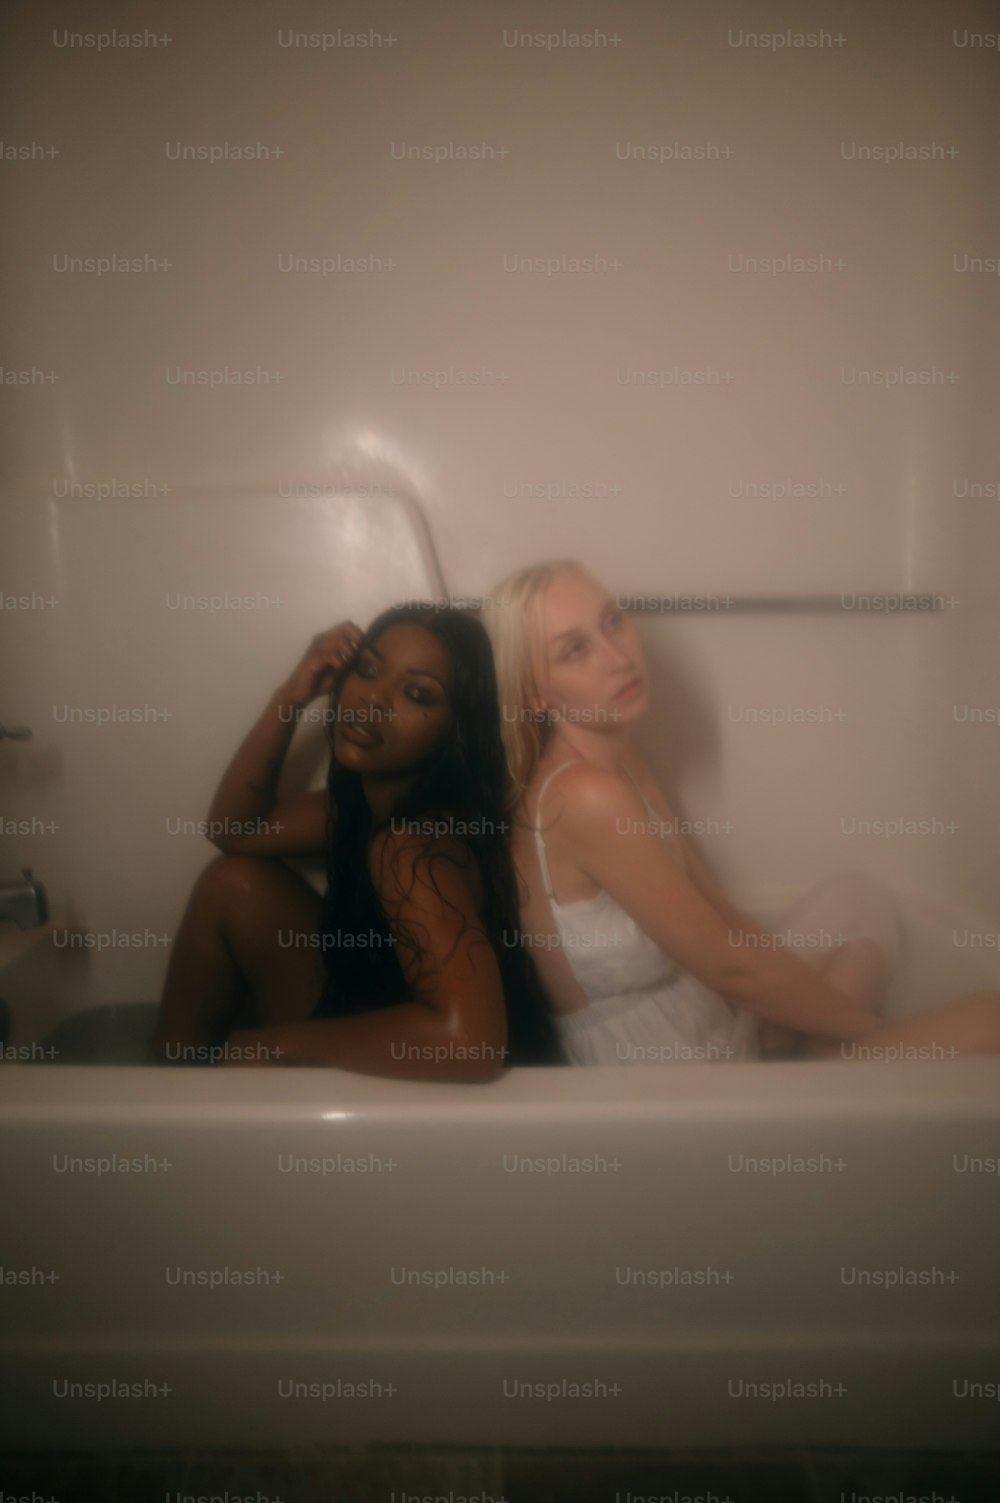 two women sitting in a bathtub in a bathroom